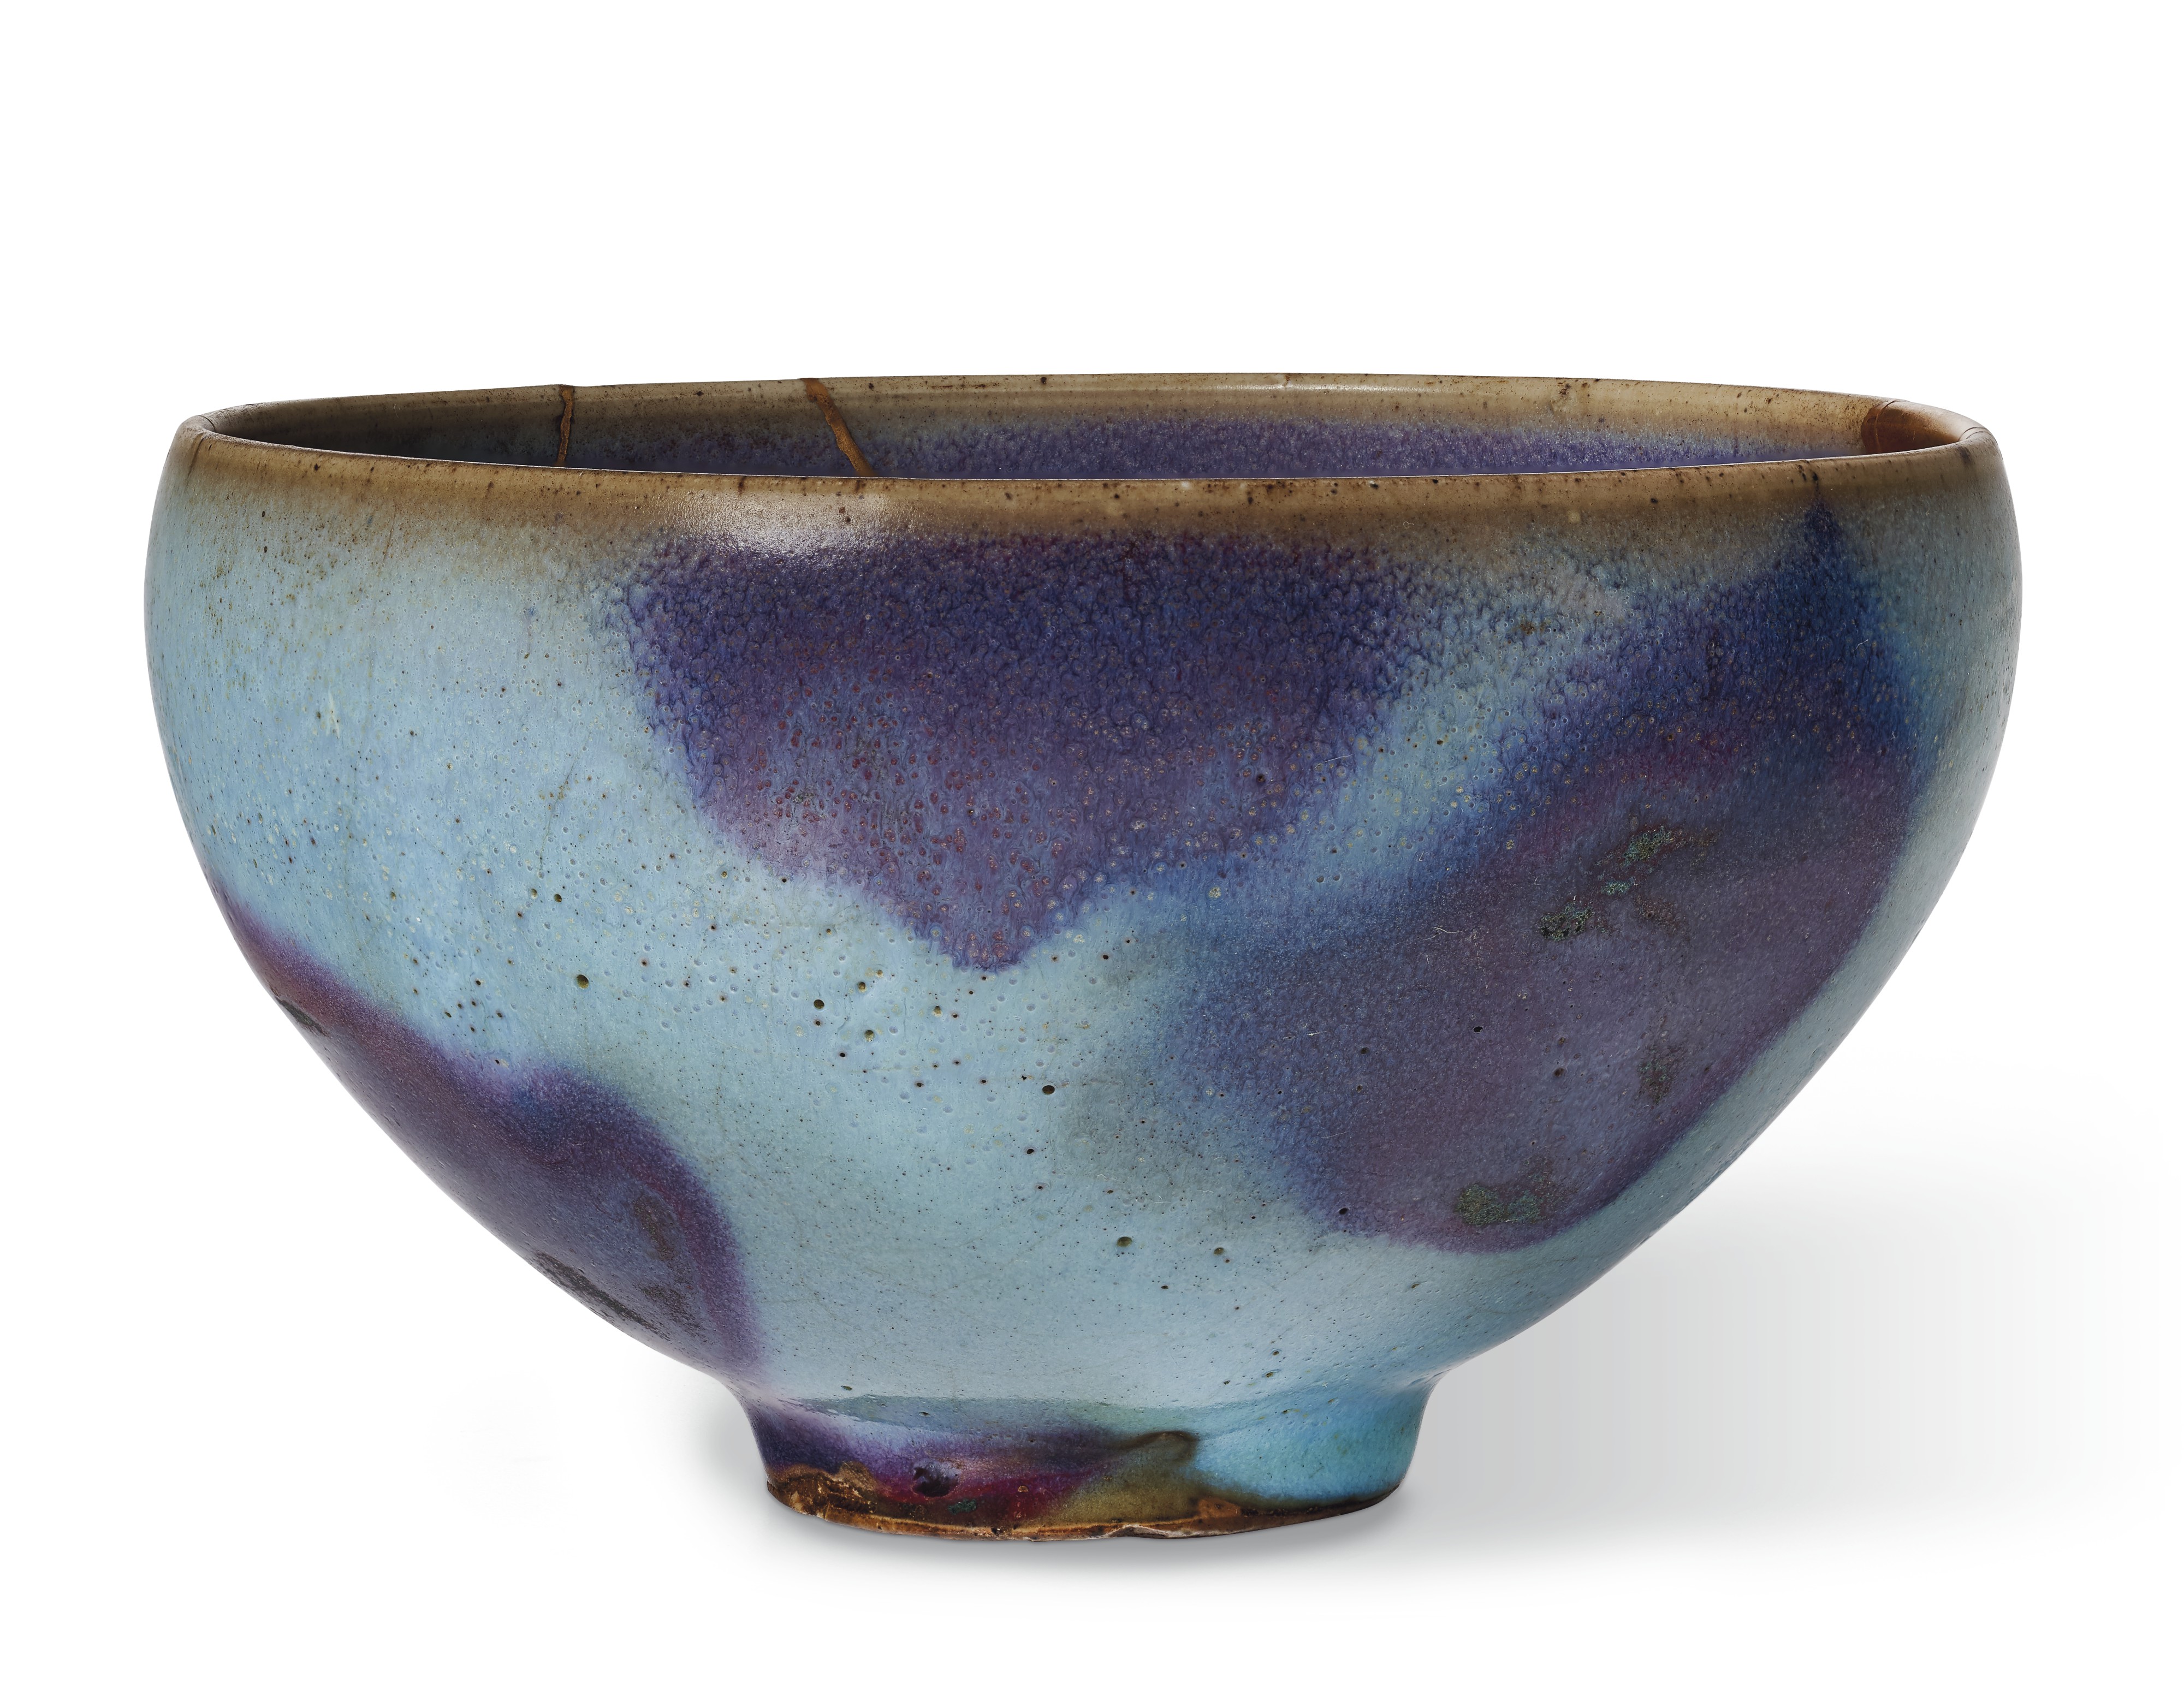 A rare purple-splashed jun bowl